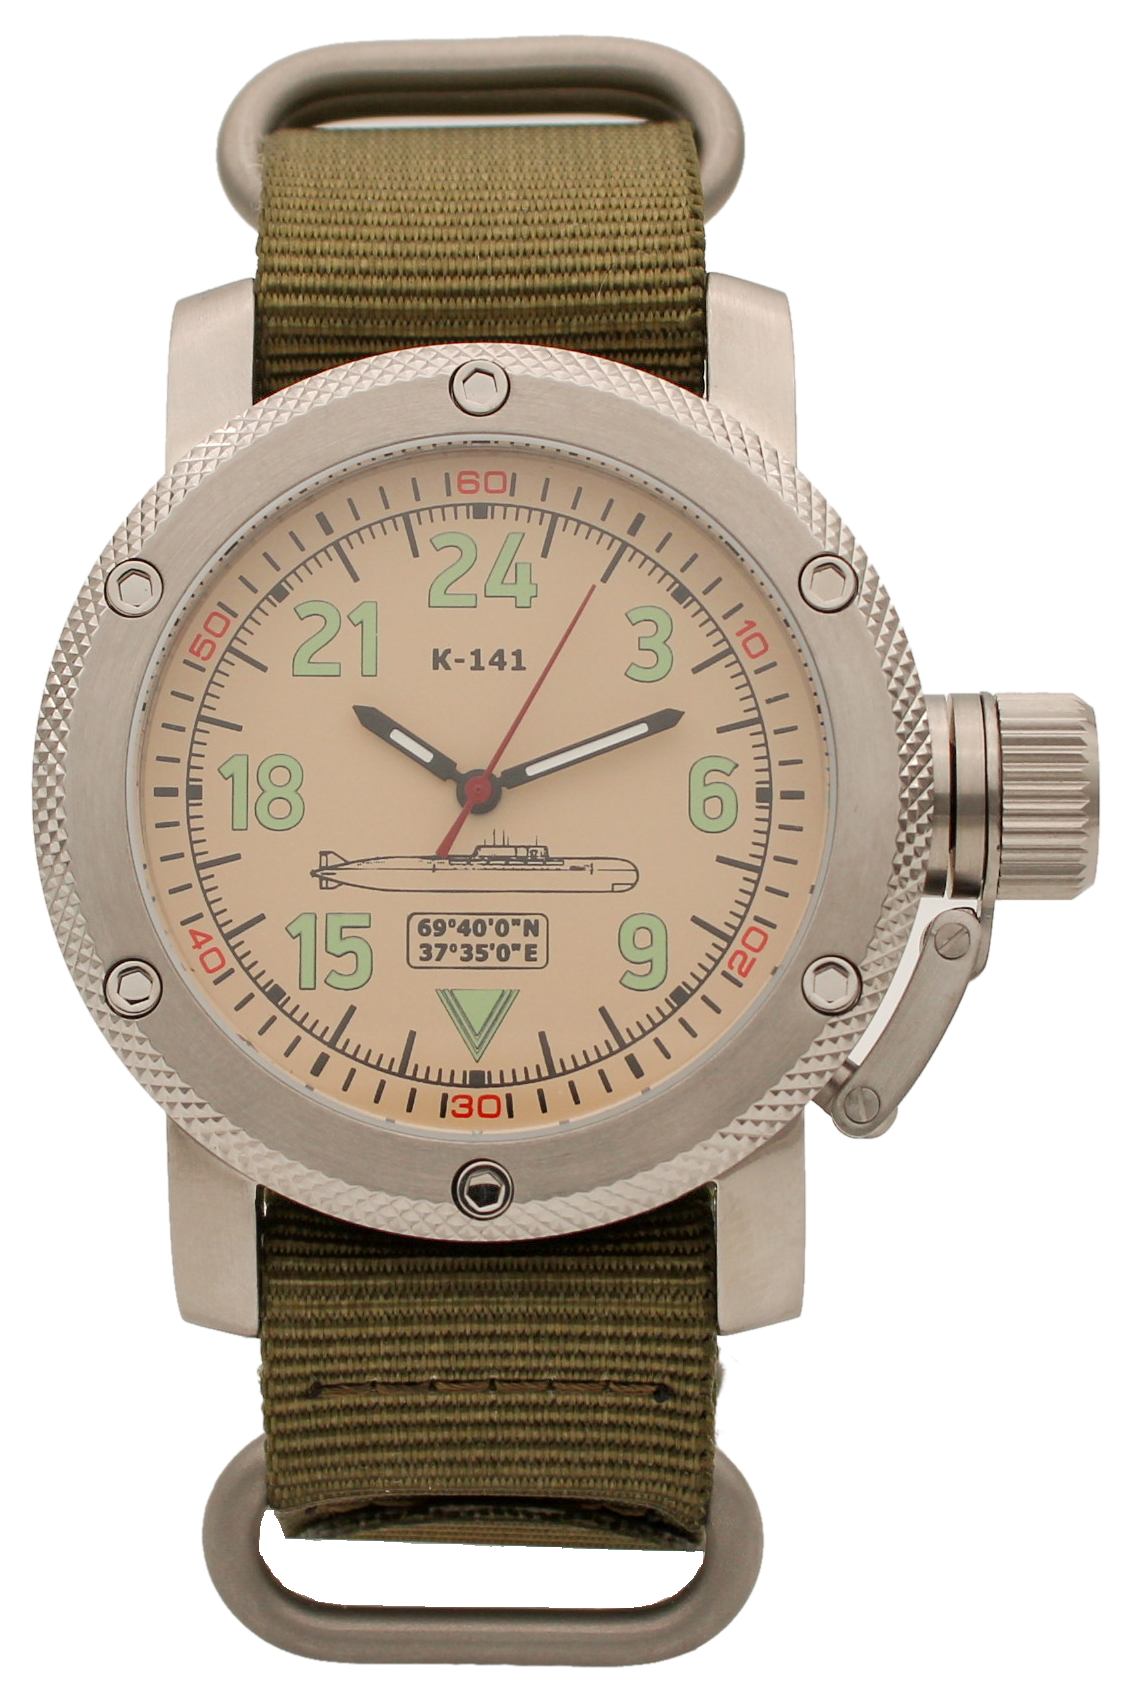 Наручные часы мужские Watch Triumph К-141 / Курск (Oscar-II)